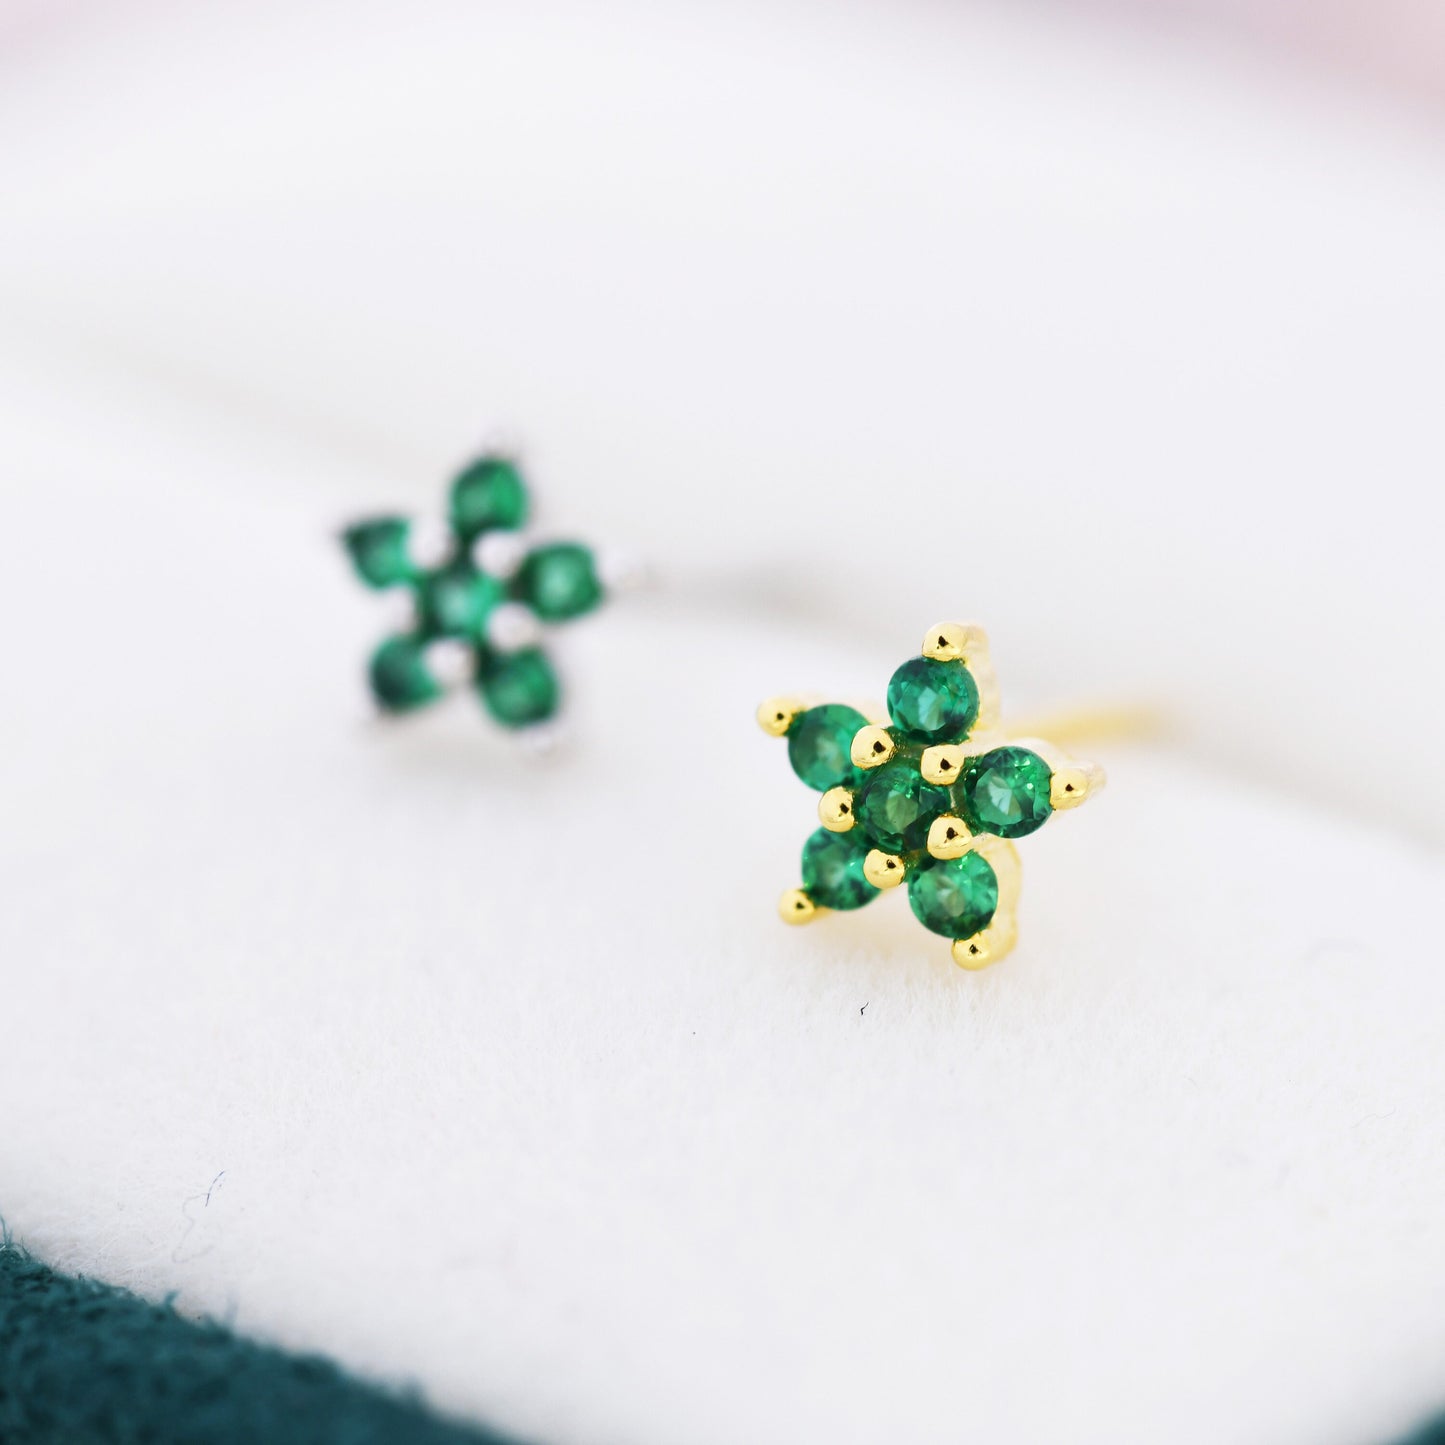 Emerald Green CZ Flower Stud Earrings in Sterling Silver, Silver or Gold,  Green Crystal Flower Earrings, Stacking Earrings